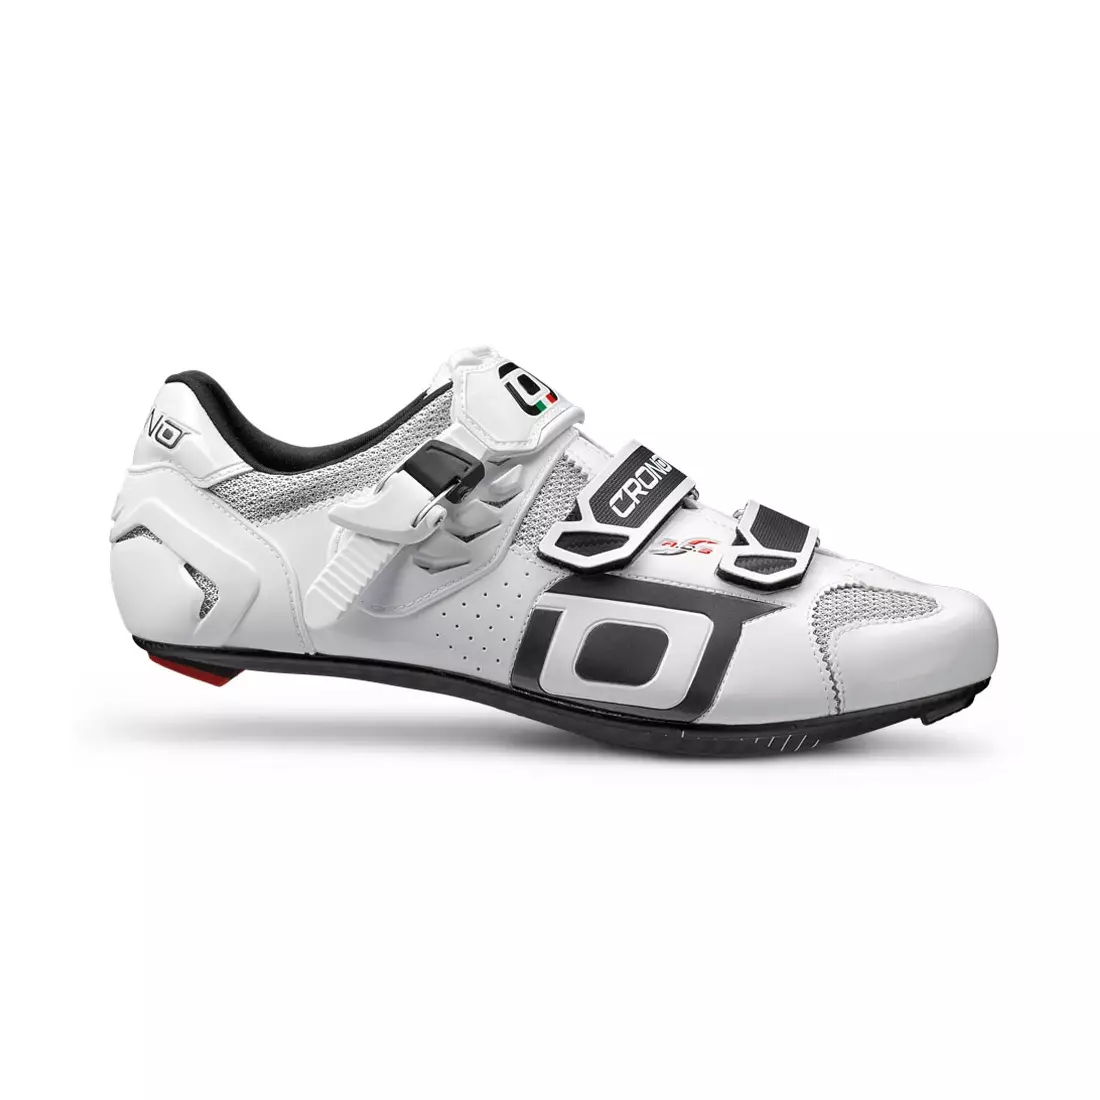 CRONO CLONE NYLON - road cycling shoes - color: White